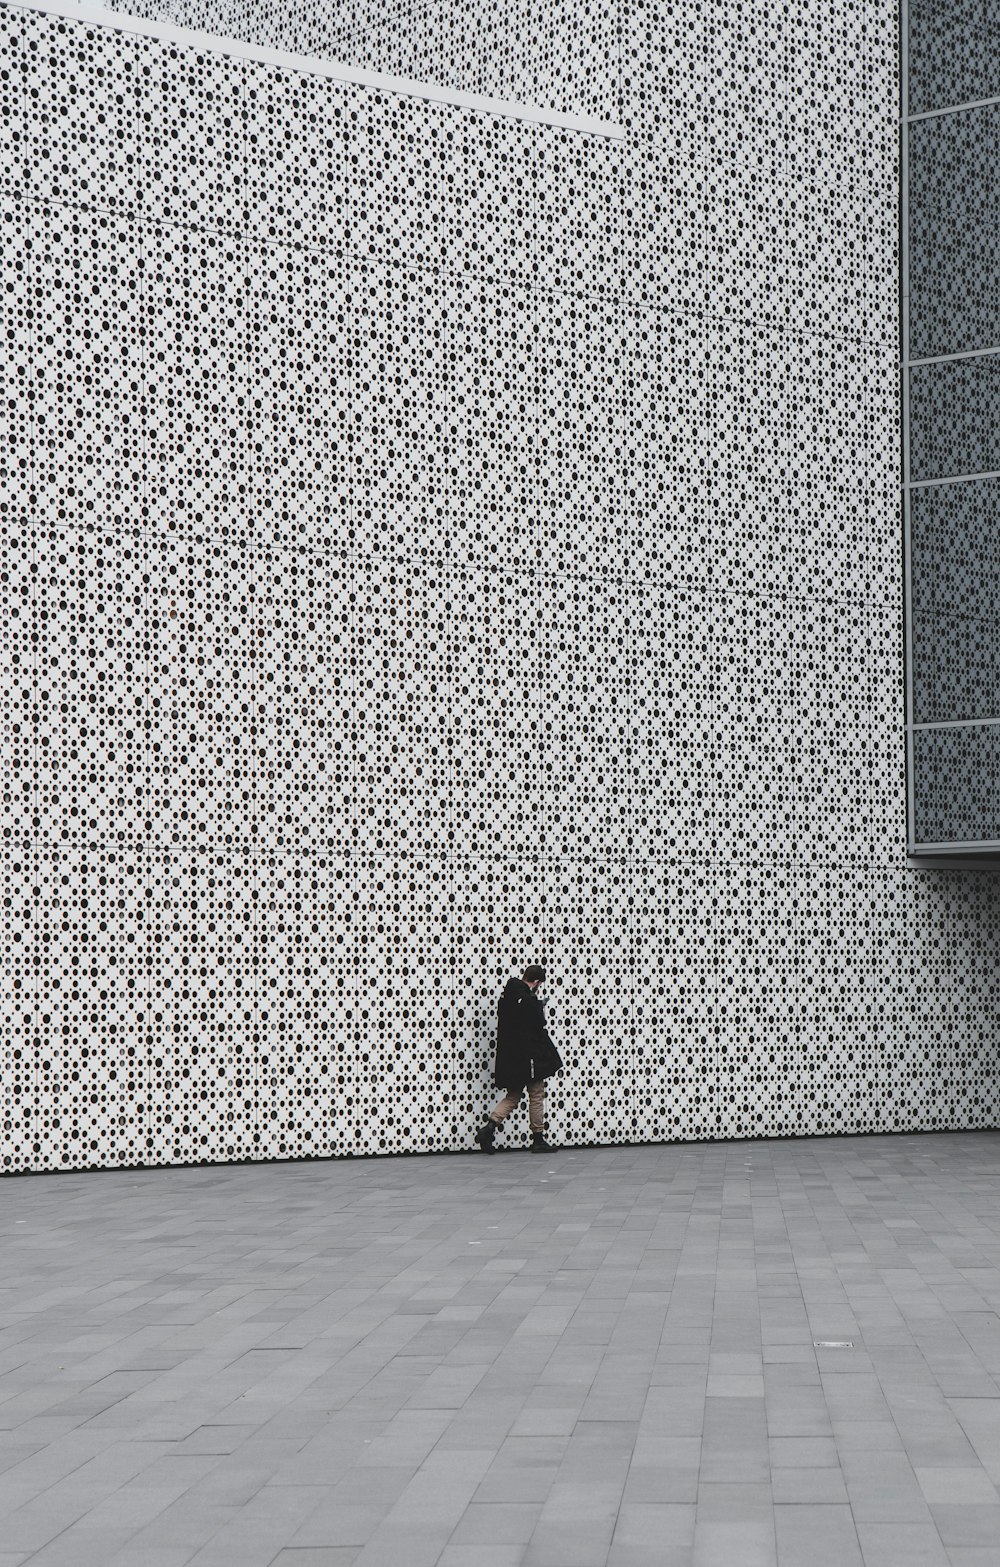 Persona in cappotto nero che si leva in piedi accanto al muro grigio